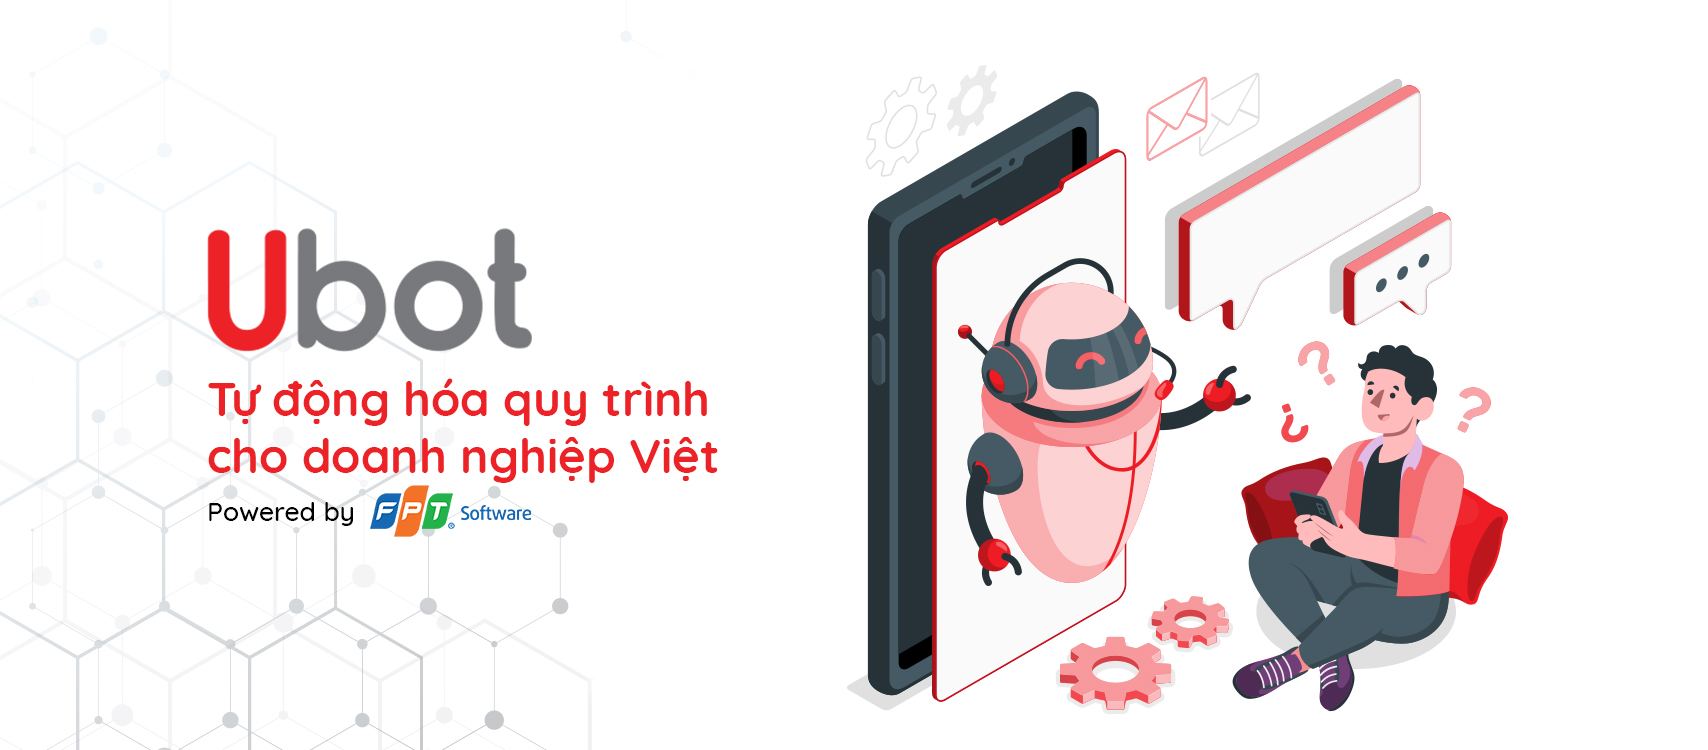 Ubot tự đống hóa quy trình cho doanh nghiệp Việt